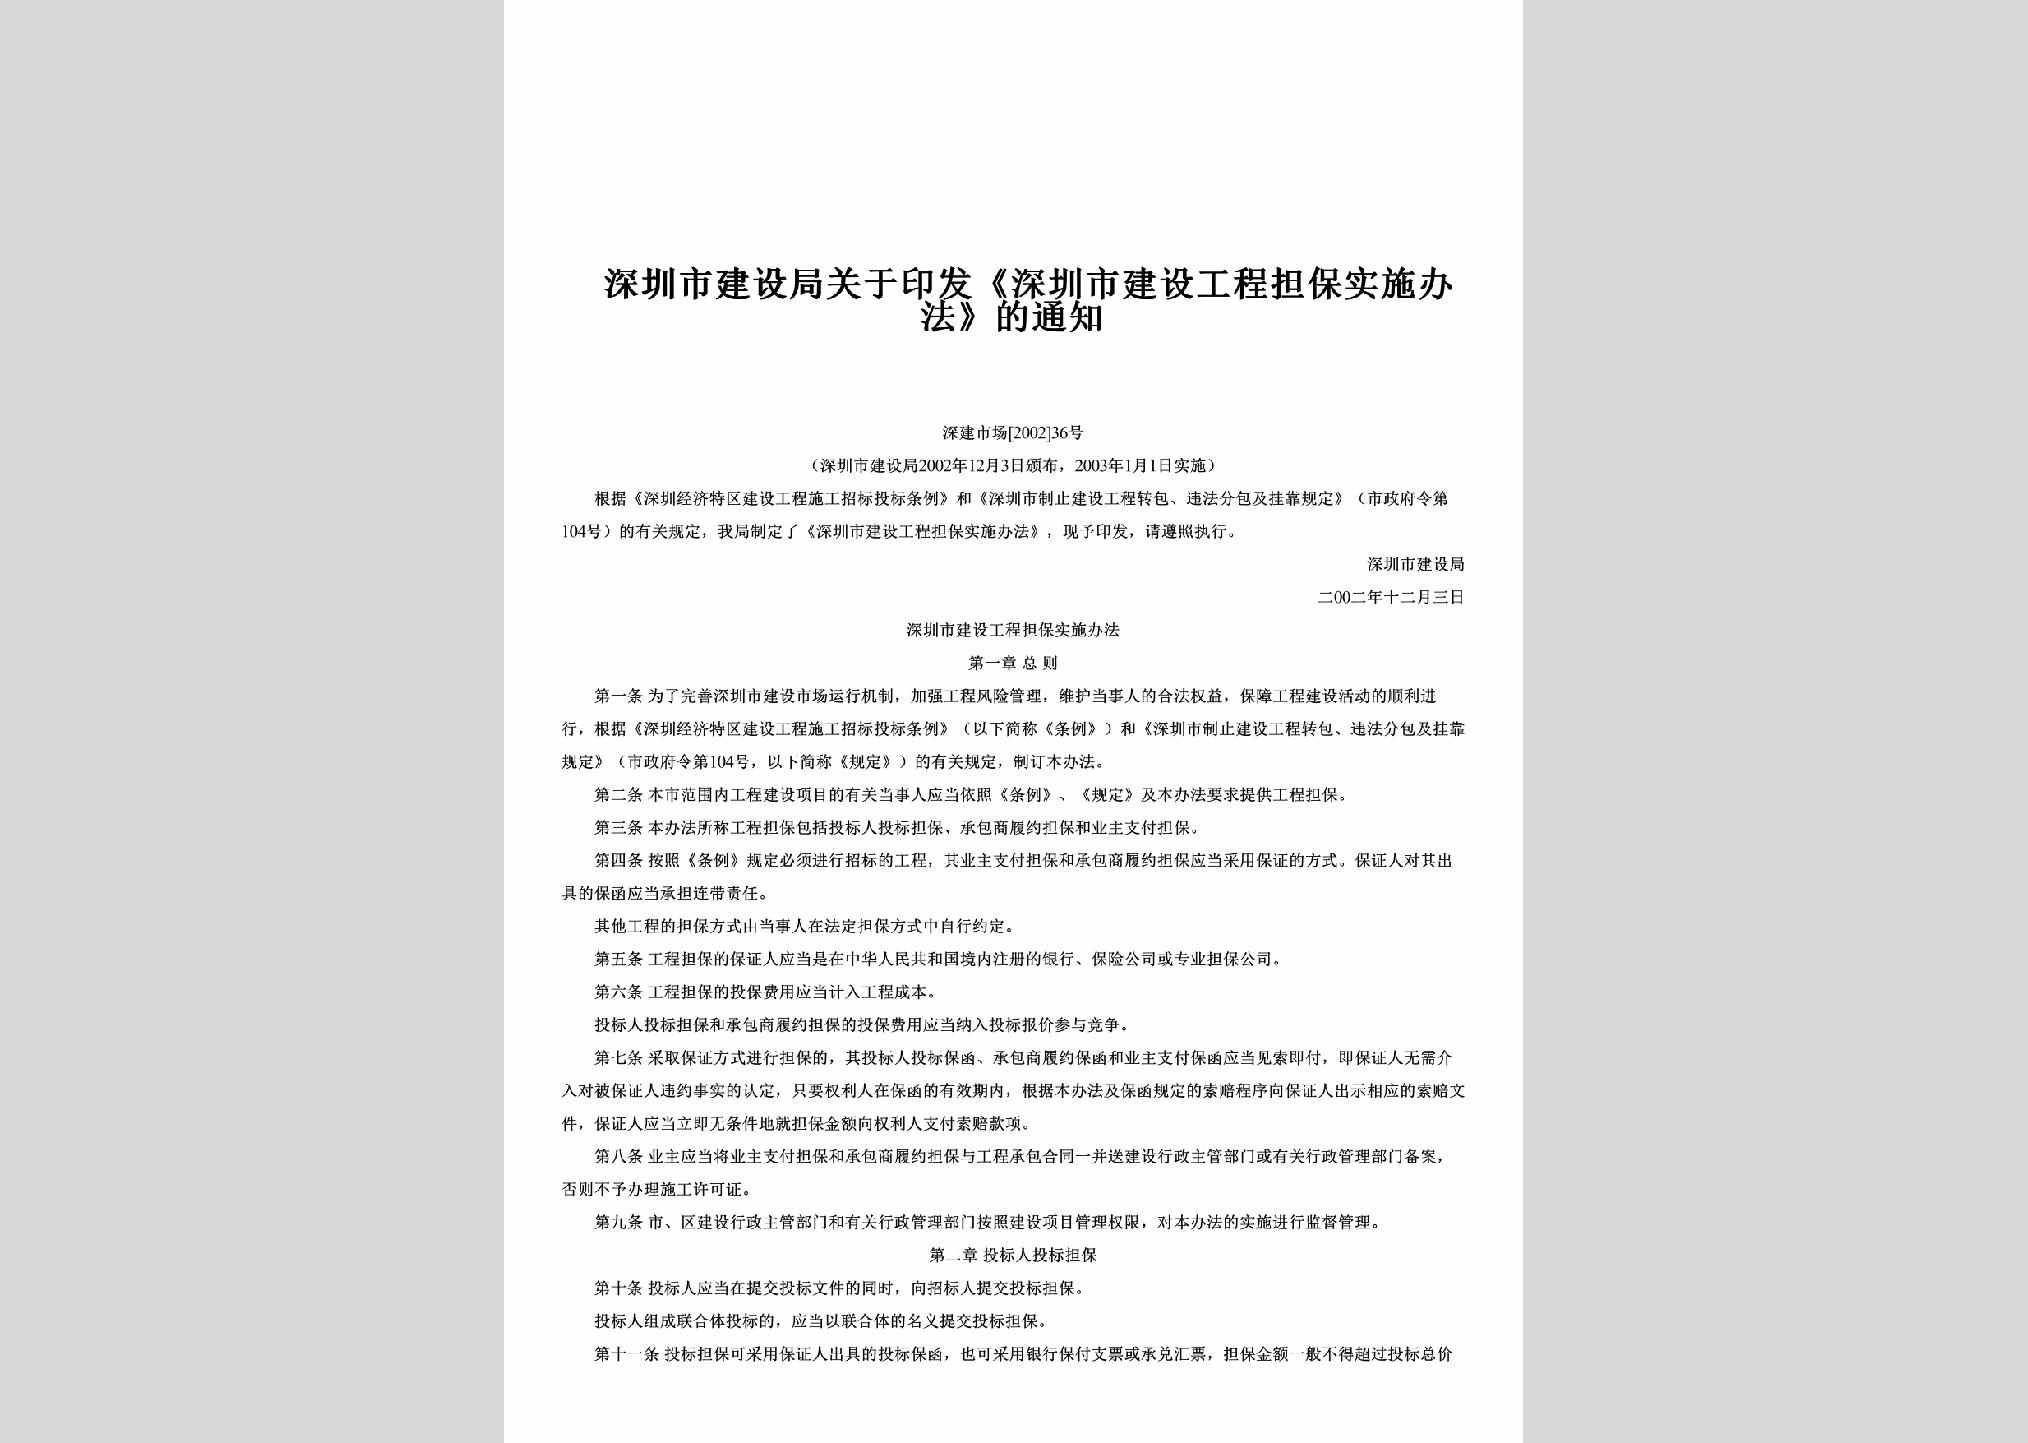 深建市场[2002]36号：关于印发《深圳市建设工程担保实施办法》的通知